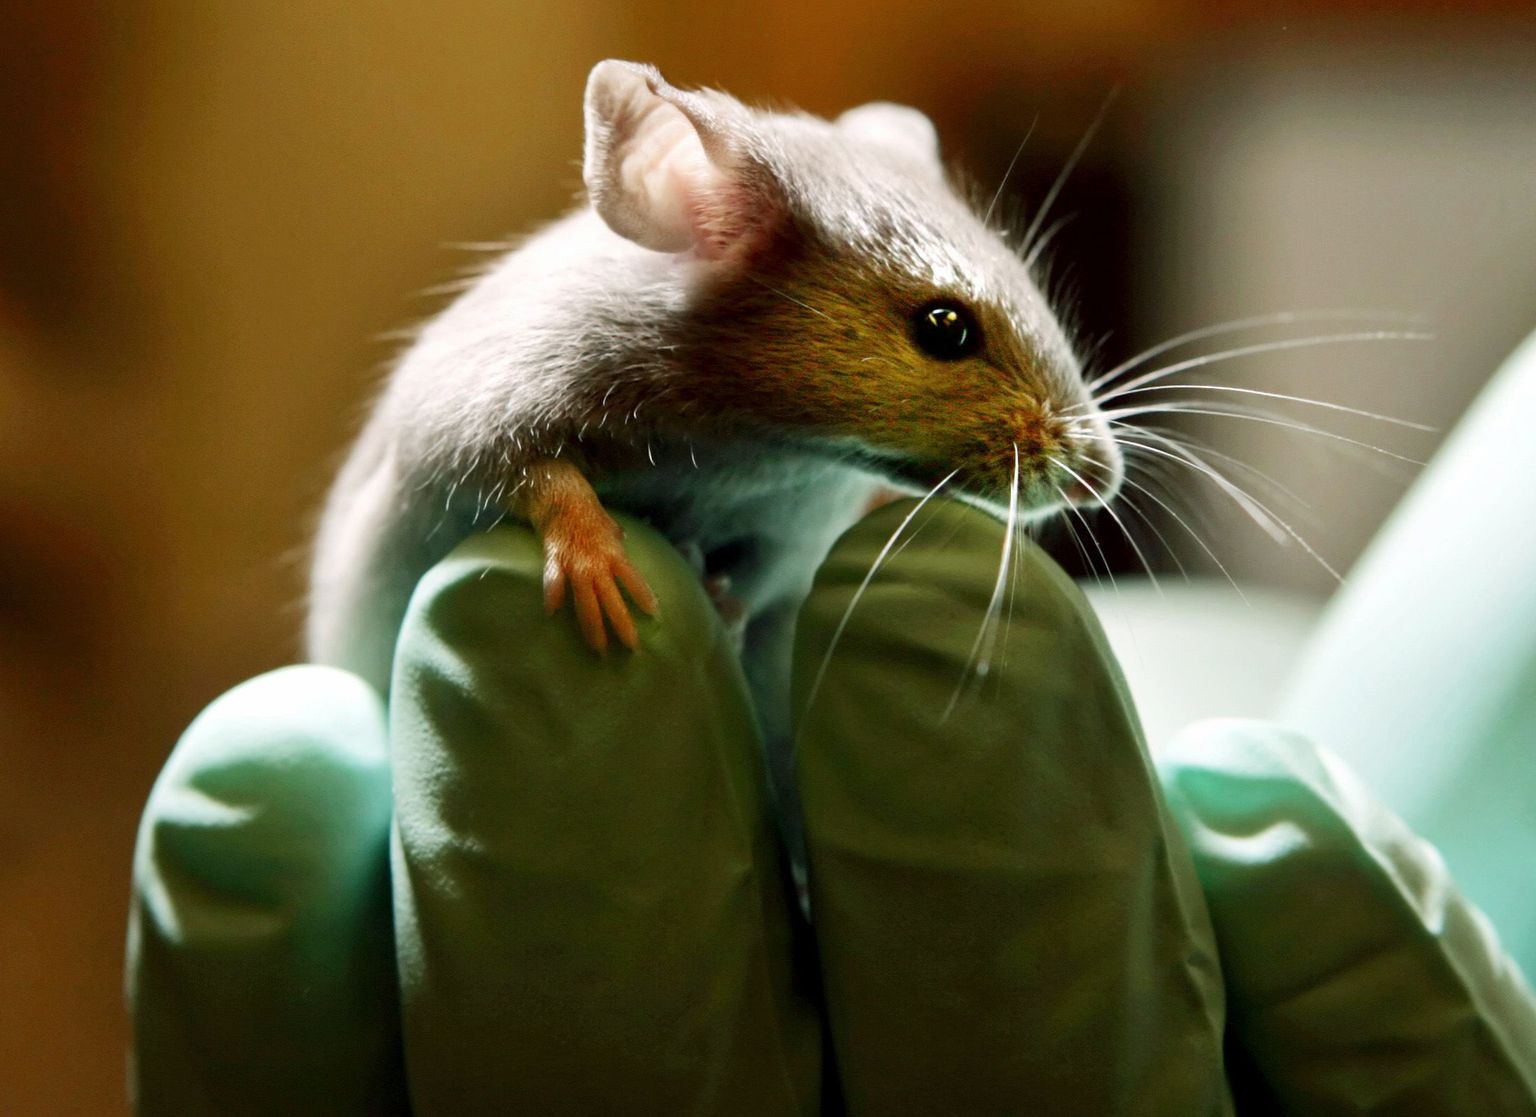 Teadlased on avastanud hiirte ultraheli tootmise mehhanismi, mis teeb nad oma keerukusega loomariigis ainulaadseks.